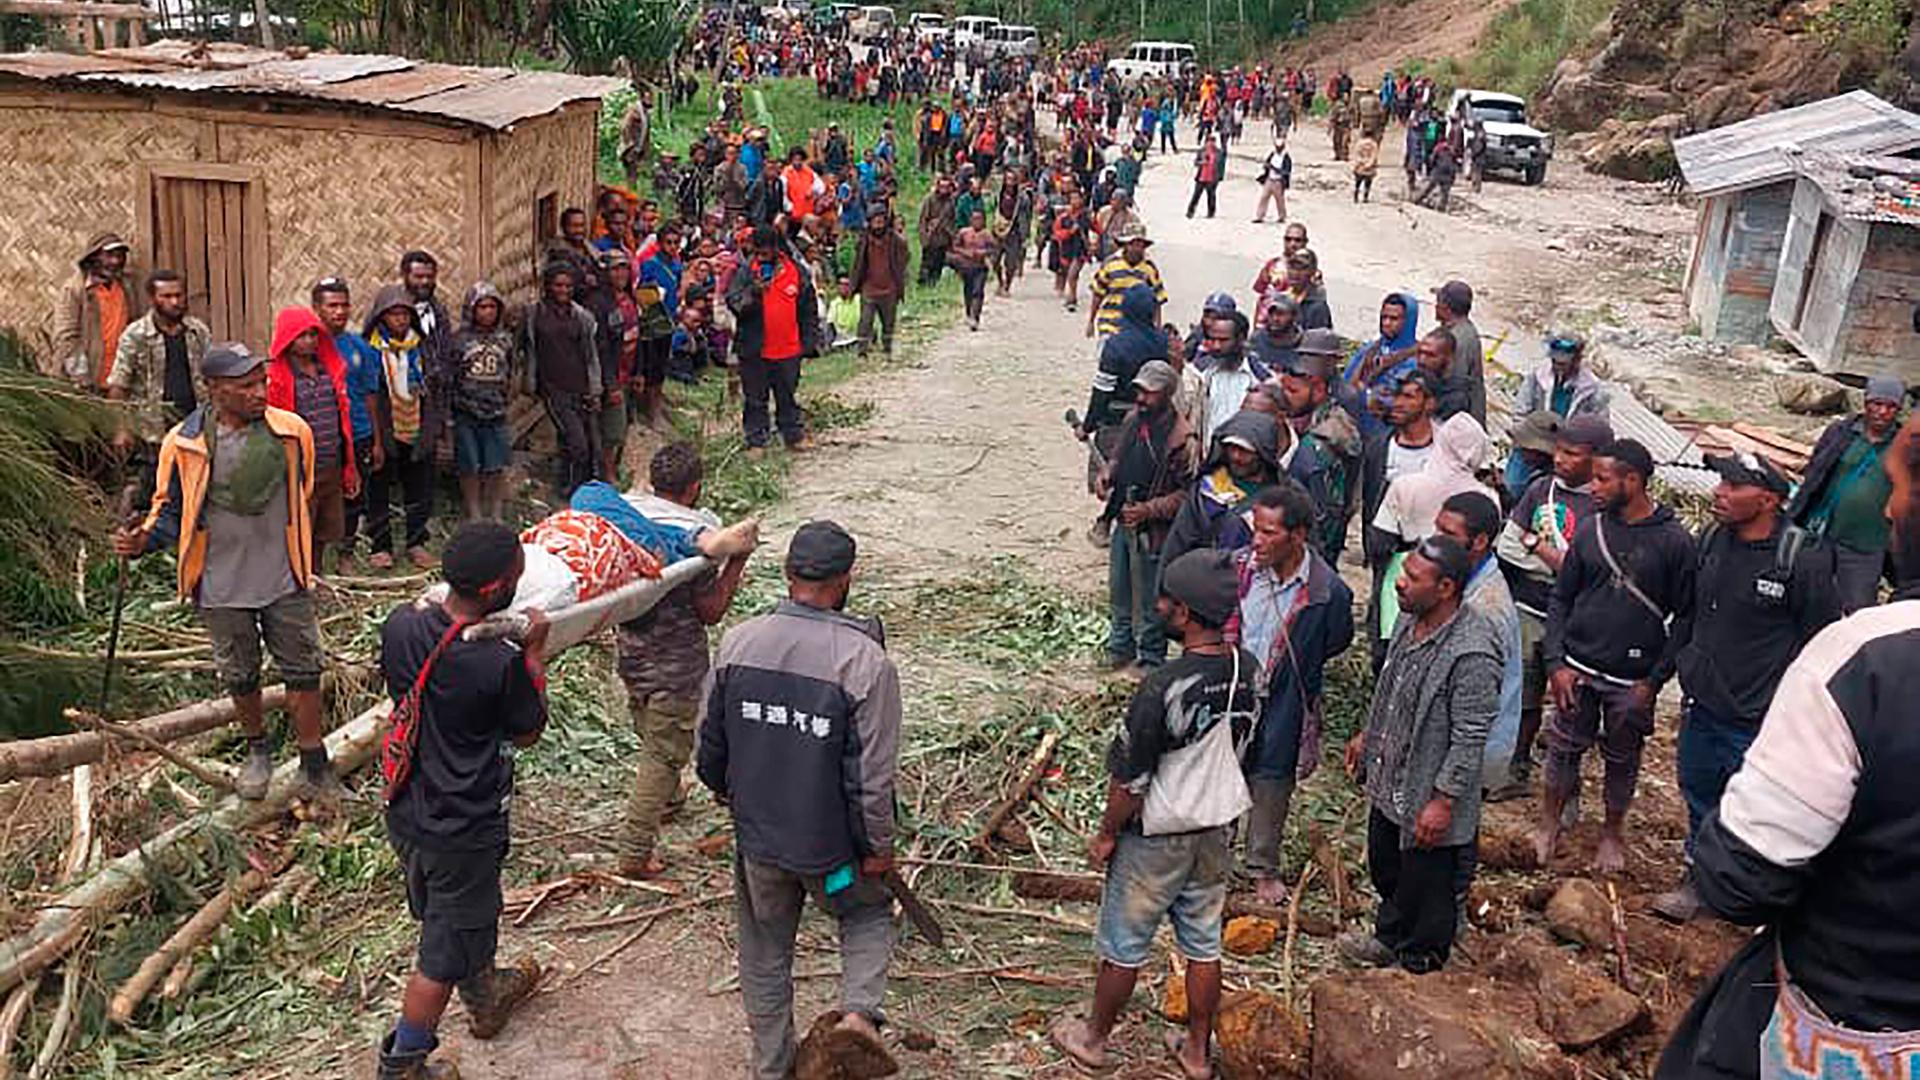 Eine verletzte Person wird nach dem Erdrutsch in Papua-Neuguinea zum Arzt getragen. Zwei Menschen haben die improvisierte Trage auf ihren Schultern, zahlreiche andere Menschen stehen am Wegrand. 